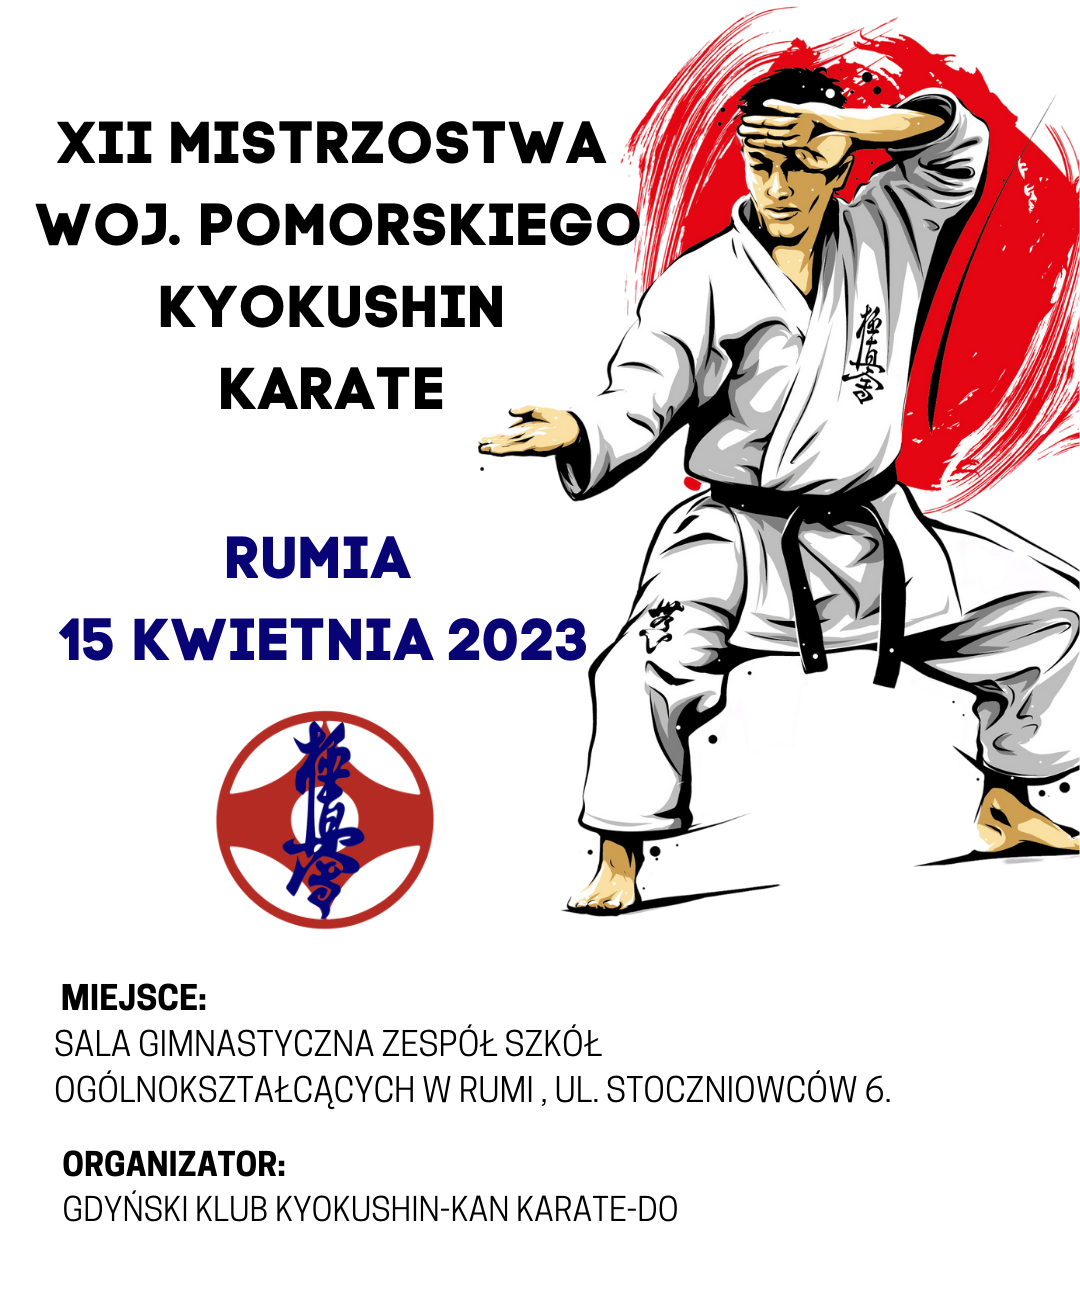 Mistrzostwa Krate Kyokushin Rumia<br />
15 kwietnia 2023<br />
